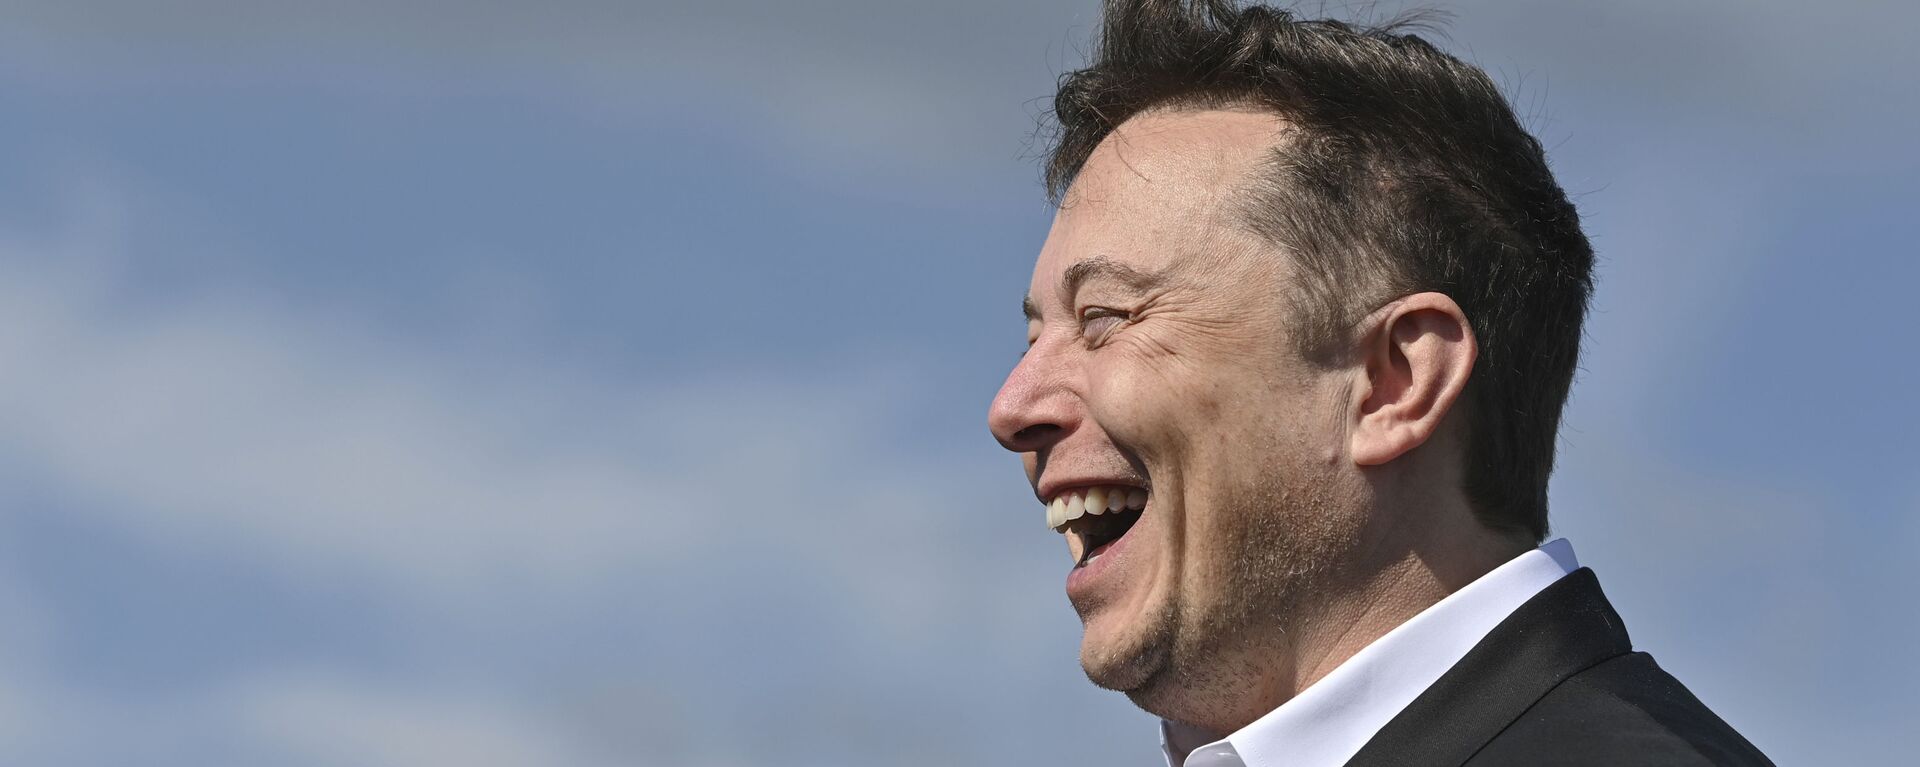 Doanh nhân công nghệ Elon Musk cười khi đến thăm công trường xây dựng Tesla Gigafactory ở Gruenheide gần Berlin, Đức, ngày 3 tháng 9 năm 2020. - Sputnik Việt Nam, 1920, 04.02.2021